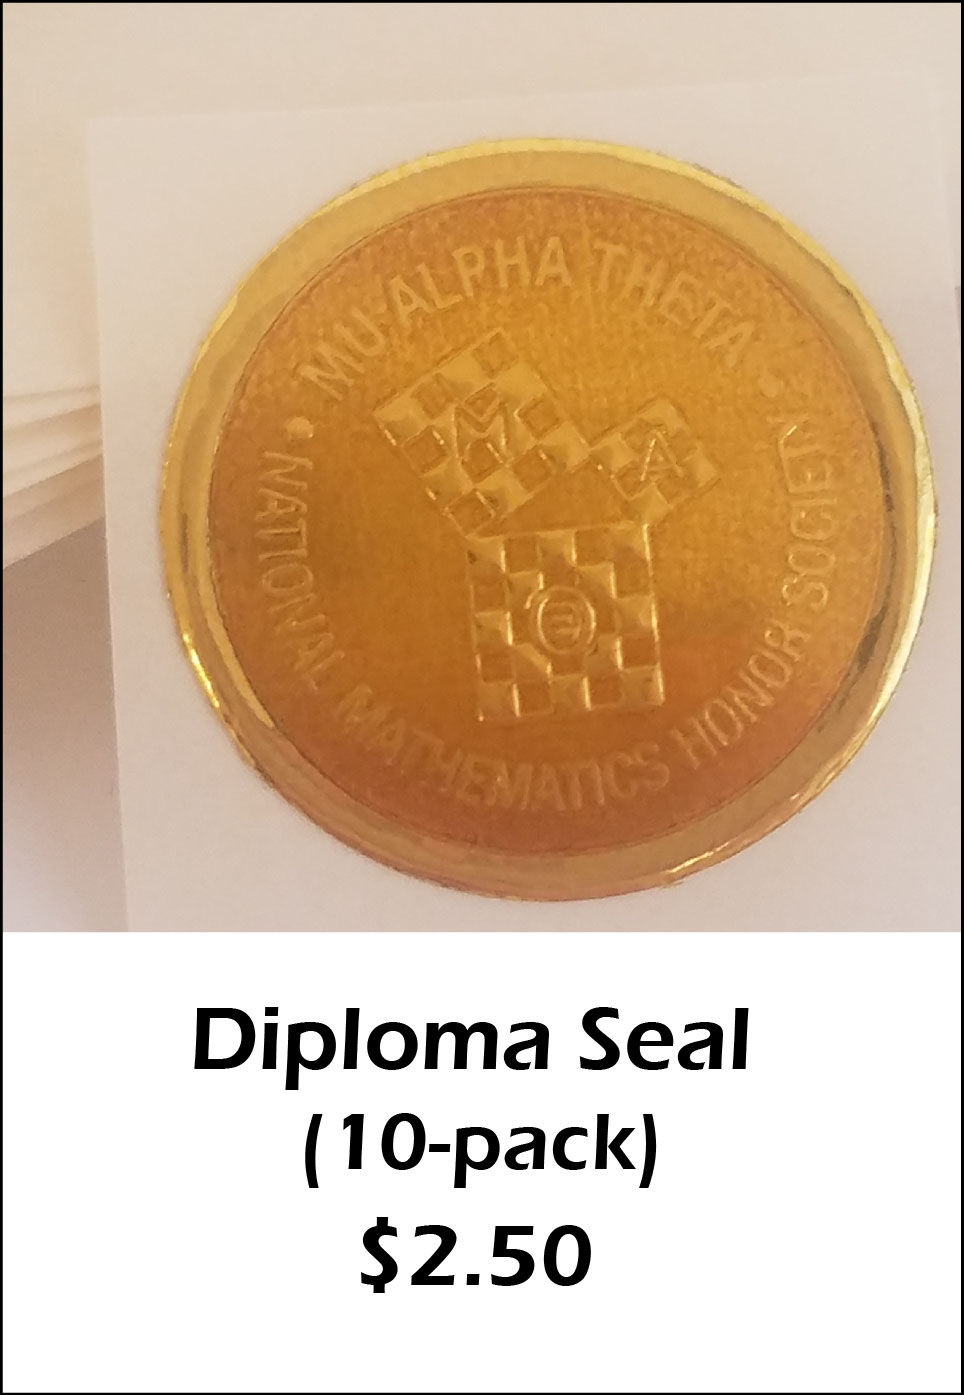 Diploma Seal - $2.50